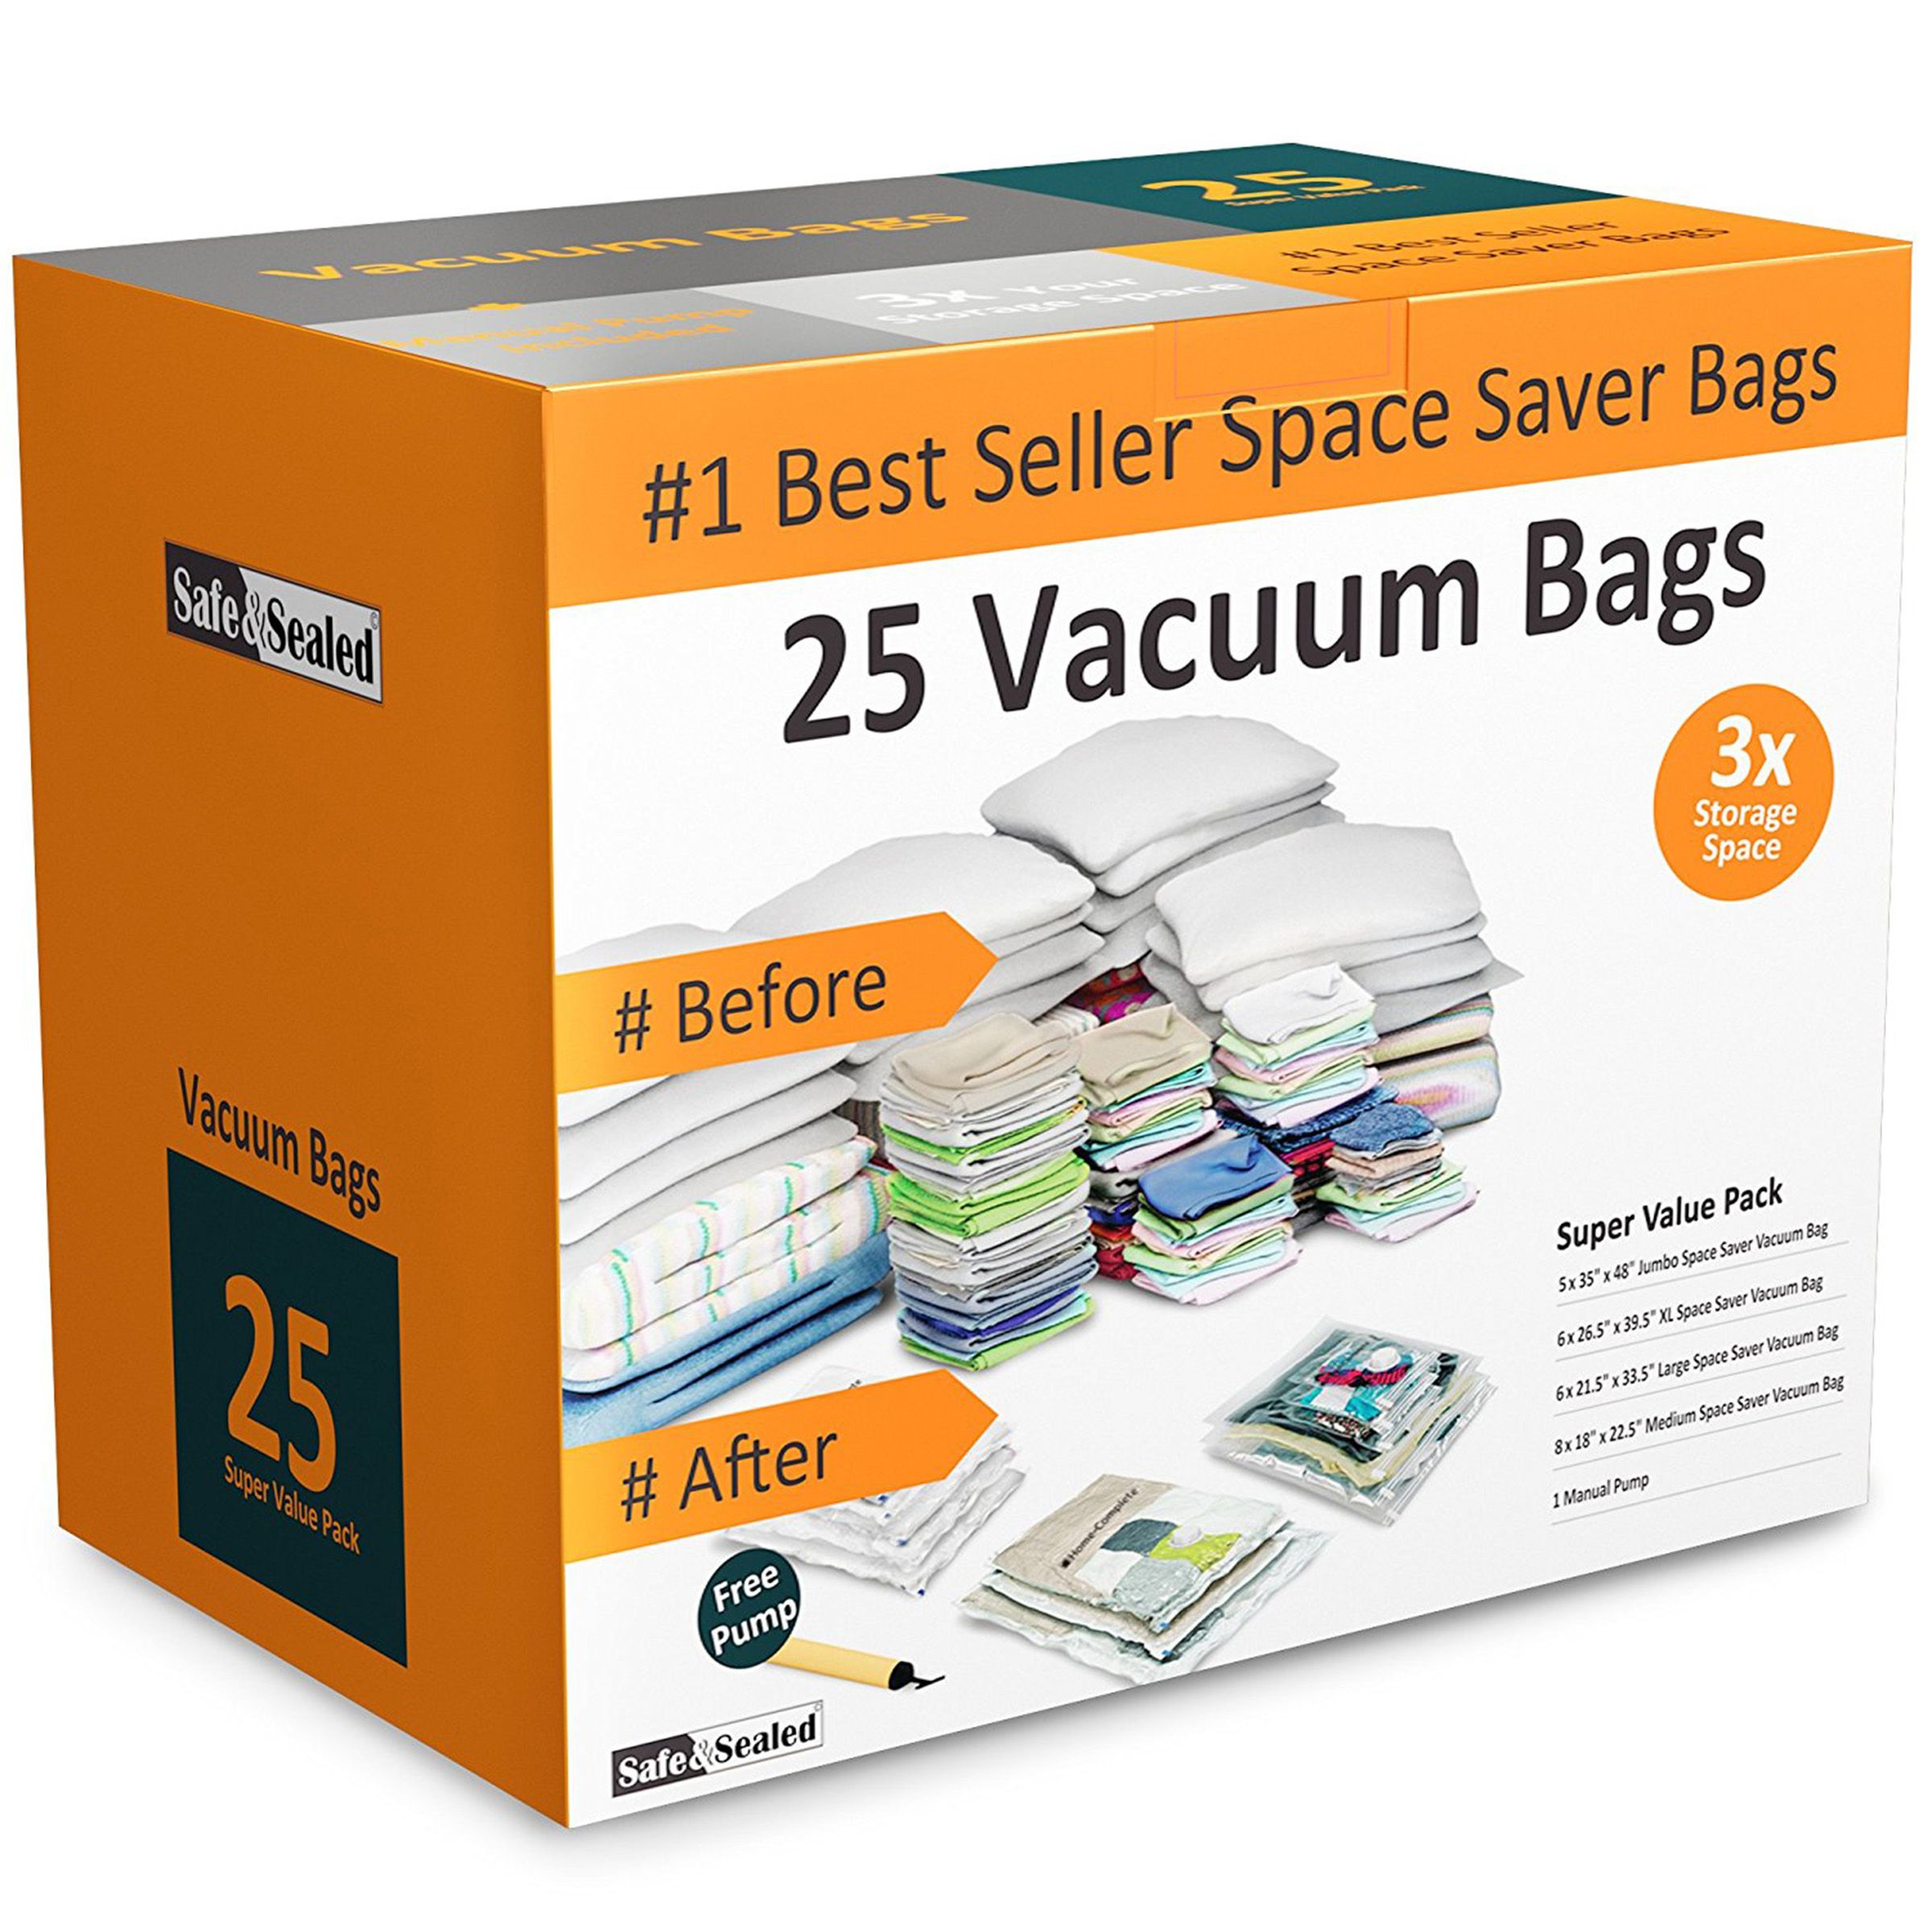 2 Pack Jumbo Space Saver Bags Vacuum Seal Storage Bag Organizer 39